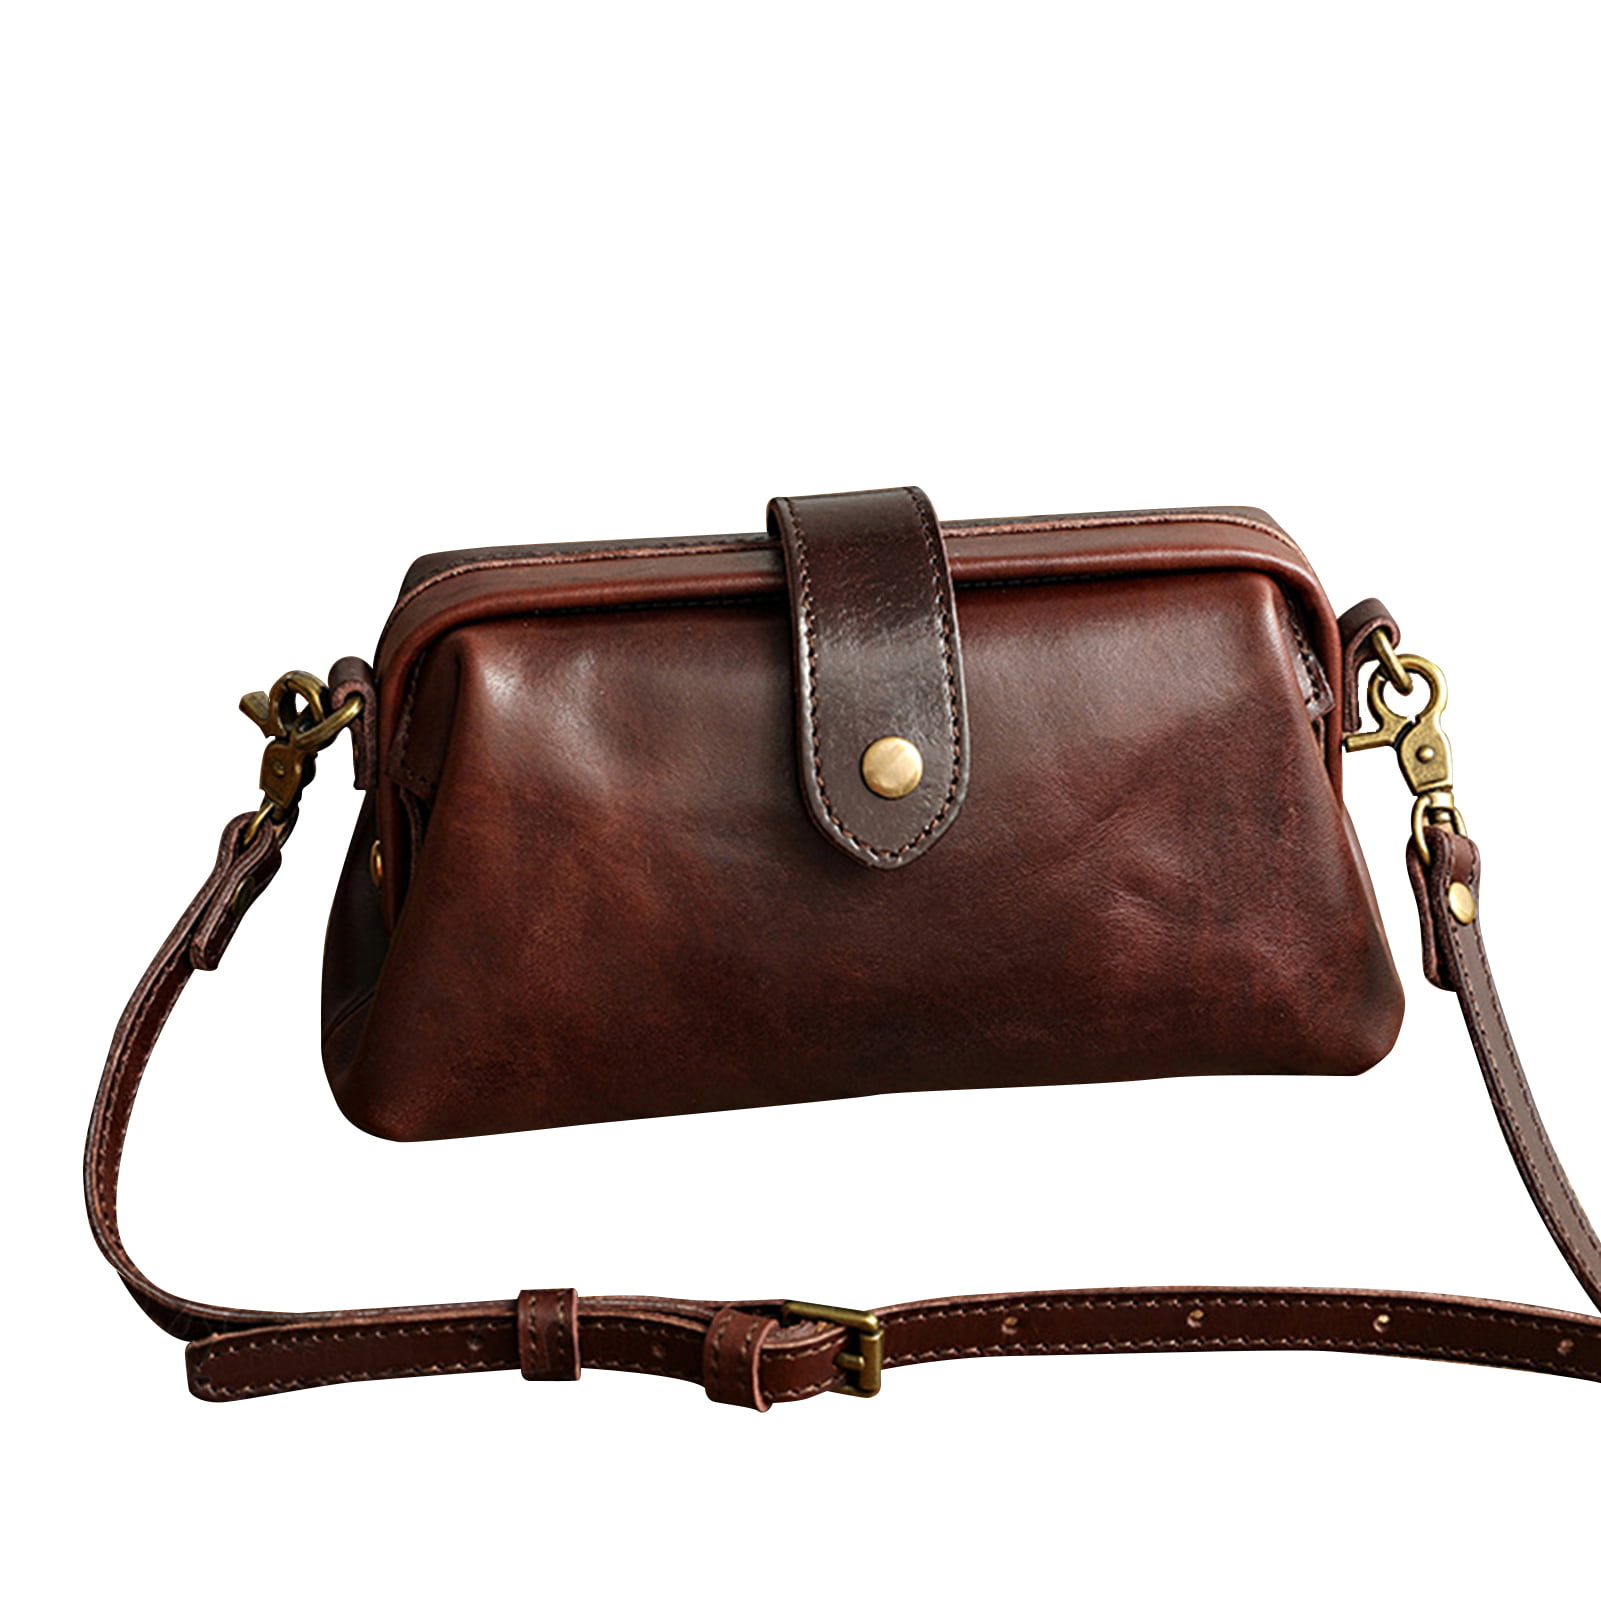 Details about   Women Small Handbag Multi Pockets Vintage Genuine Leather Shoulder Crossbody Bag 